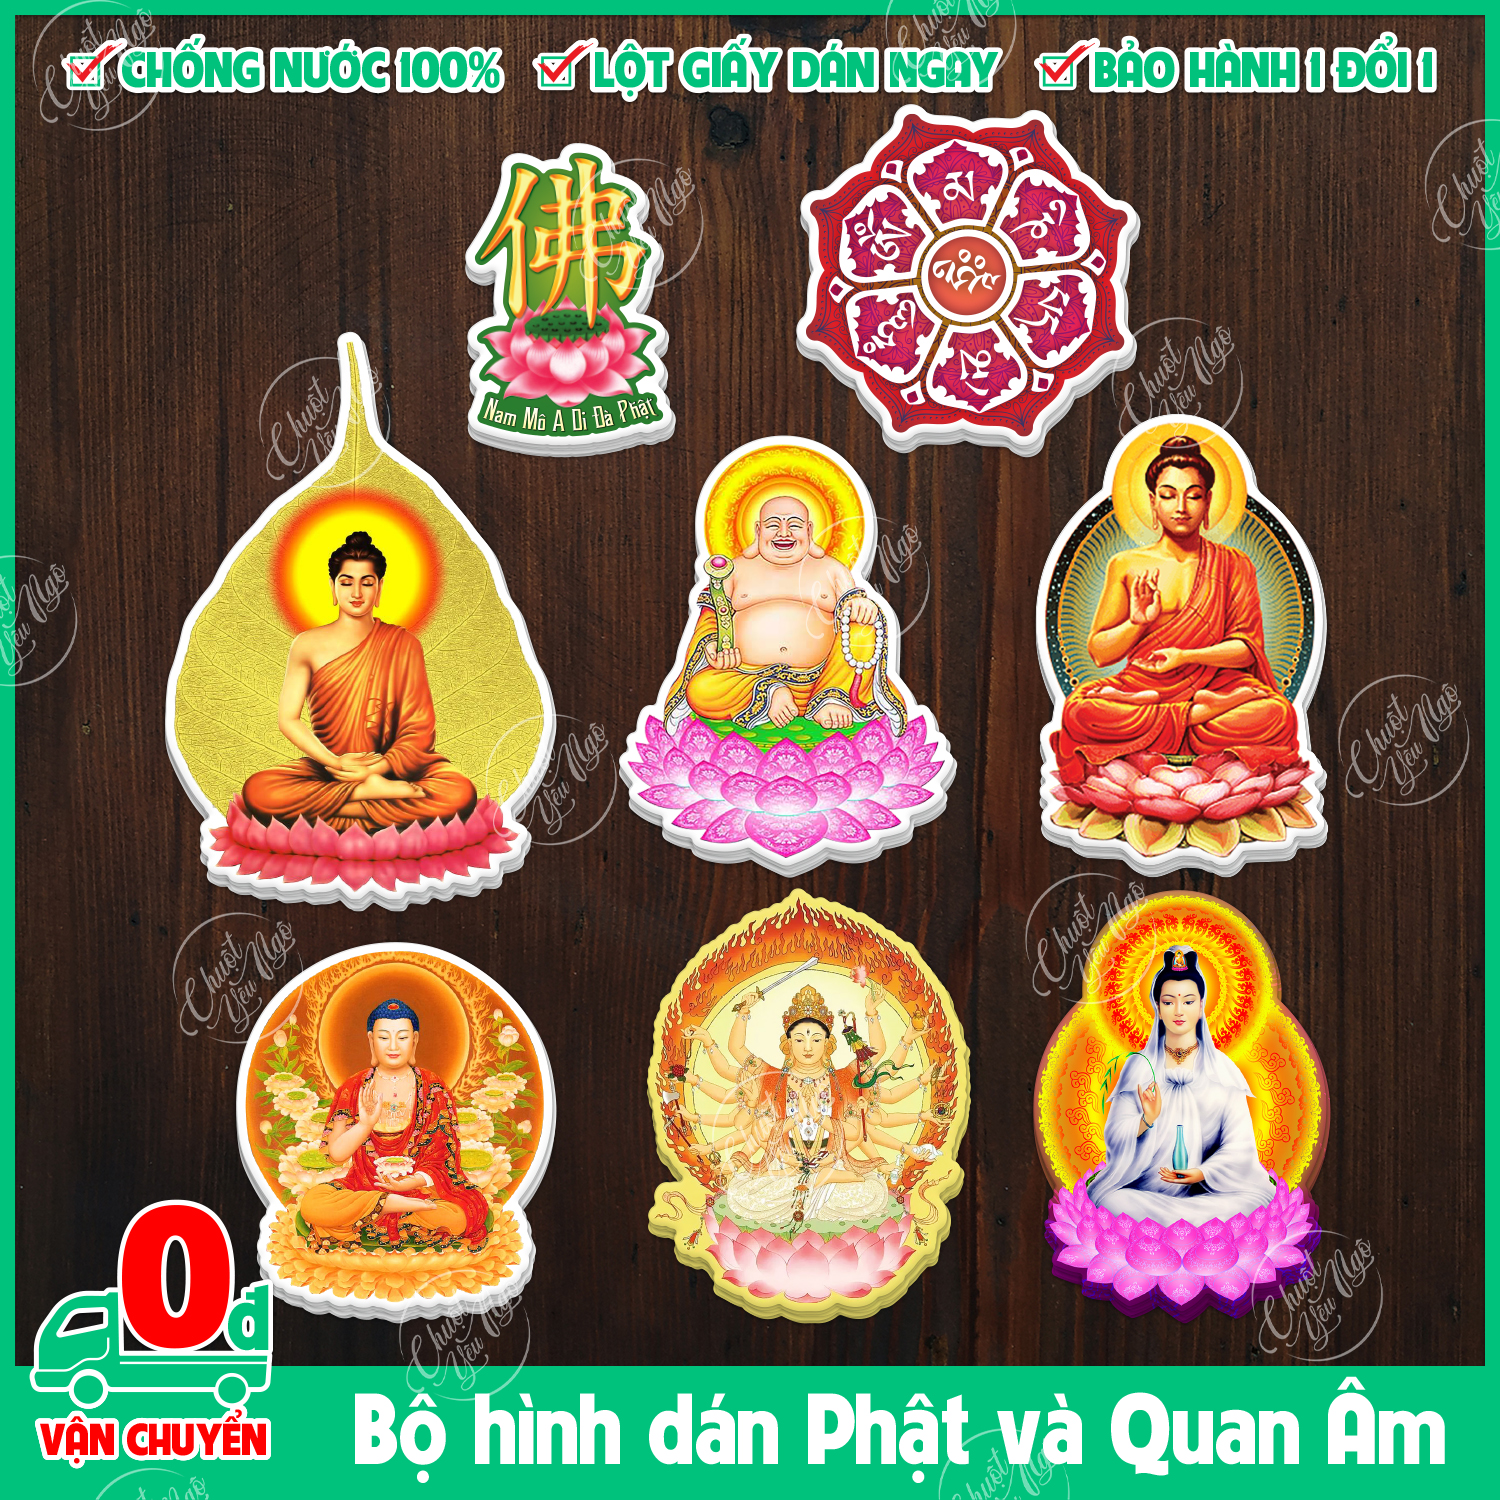 Bộ 8 hình dán chủ đề Phật quan âm hoa sen dùng để trang trí cầu may mắn bình an